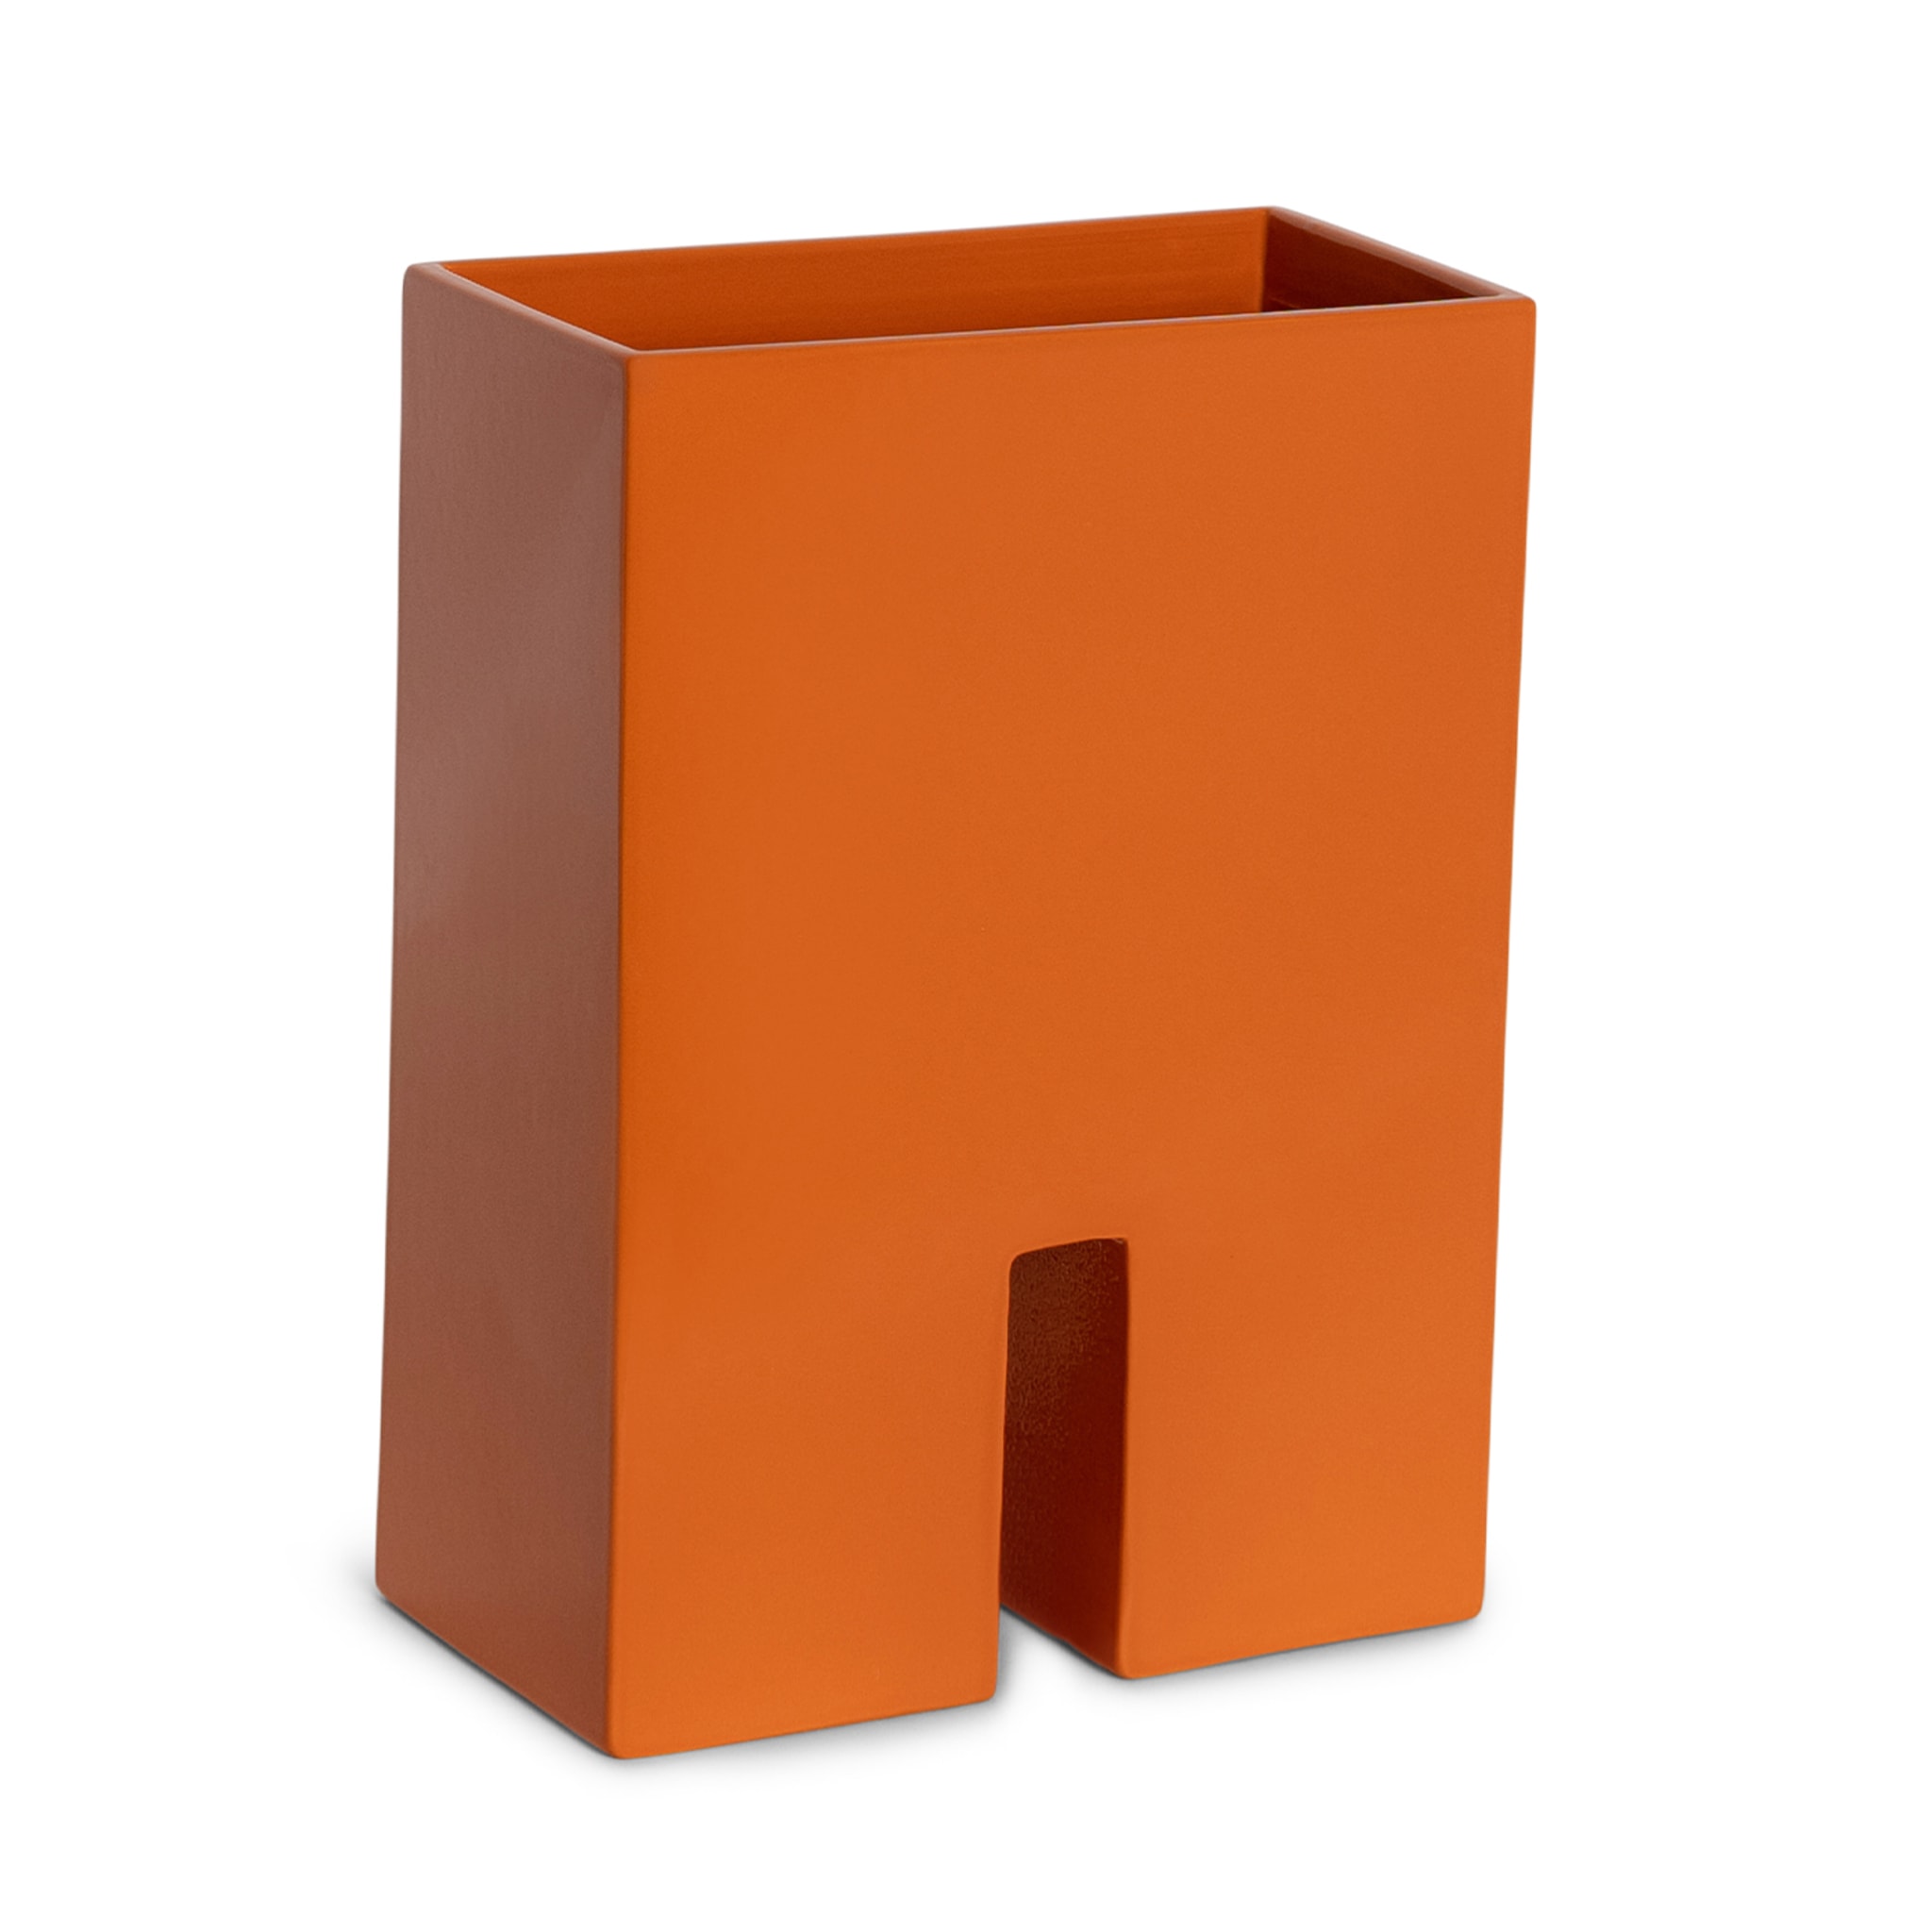 N. 8 Orange Vase by Muller Van Severen - Alternative view 1